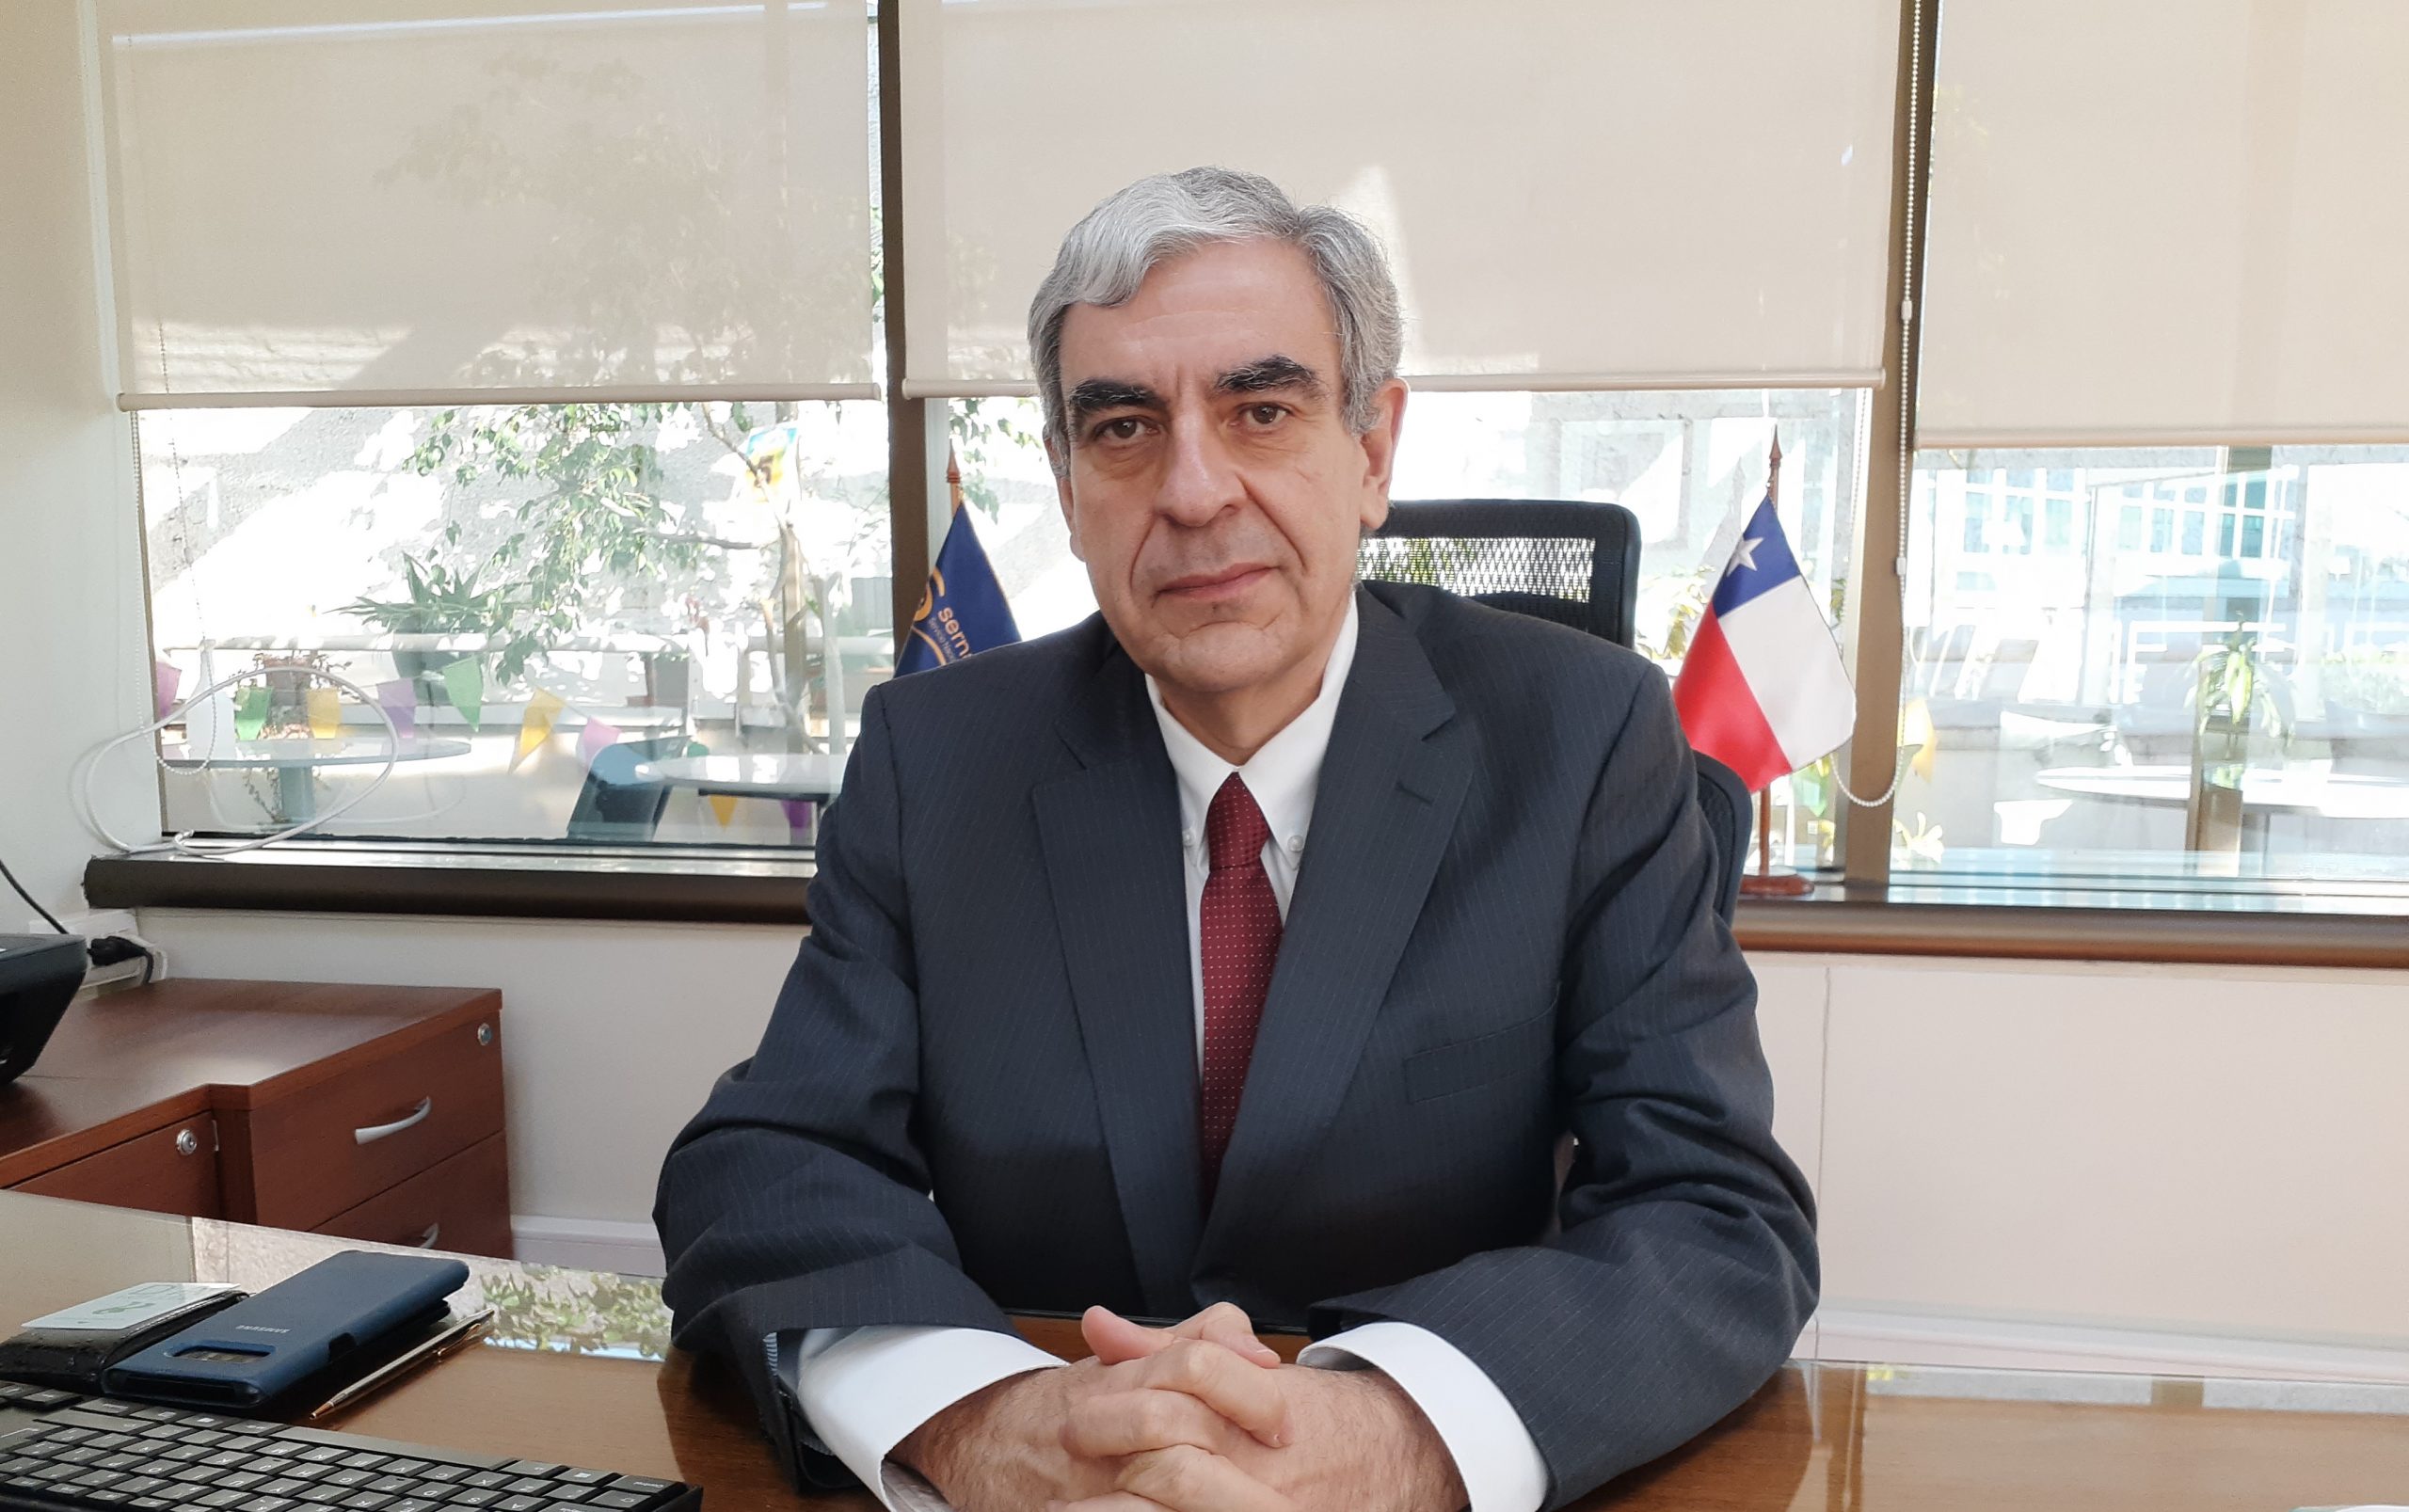 Director nacional de Sernapesca: “La estrategia de un modelo mixto de fiscalización presencial y remota se ha ido consolidando”